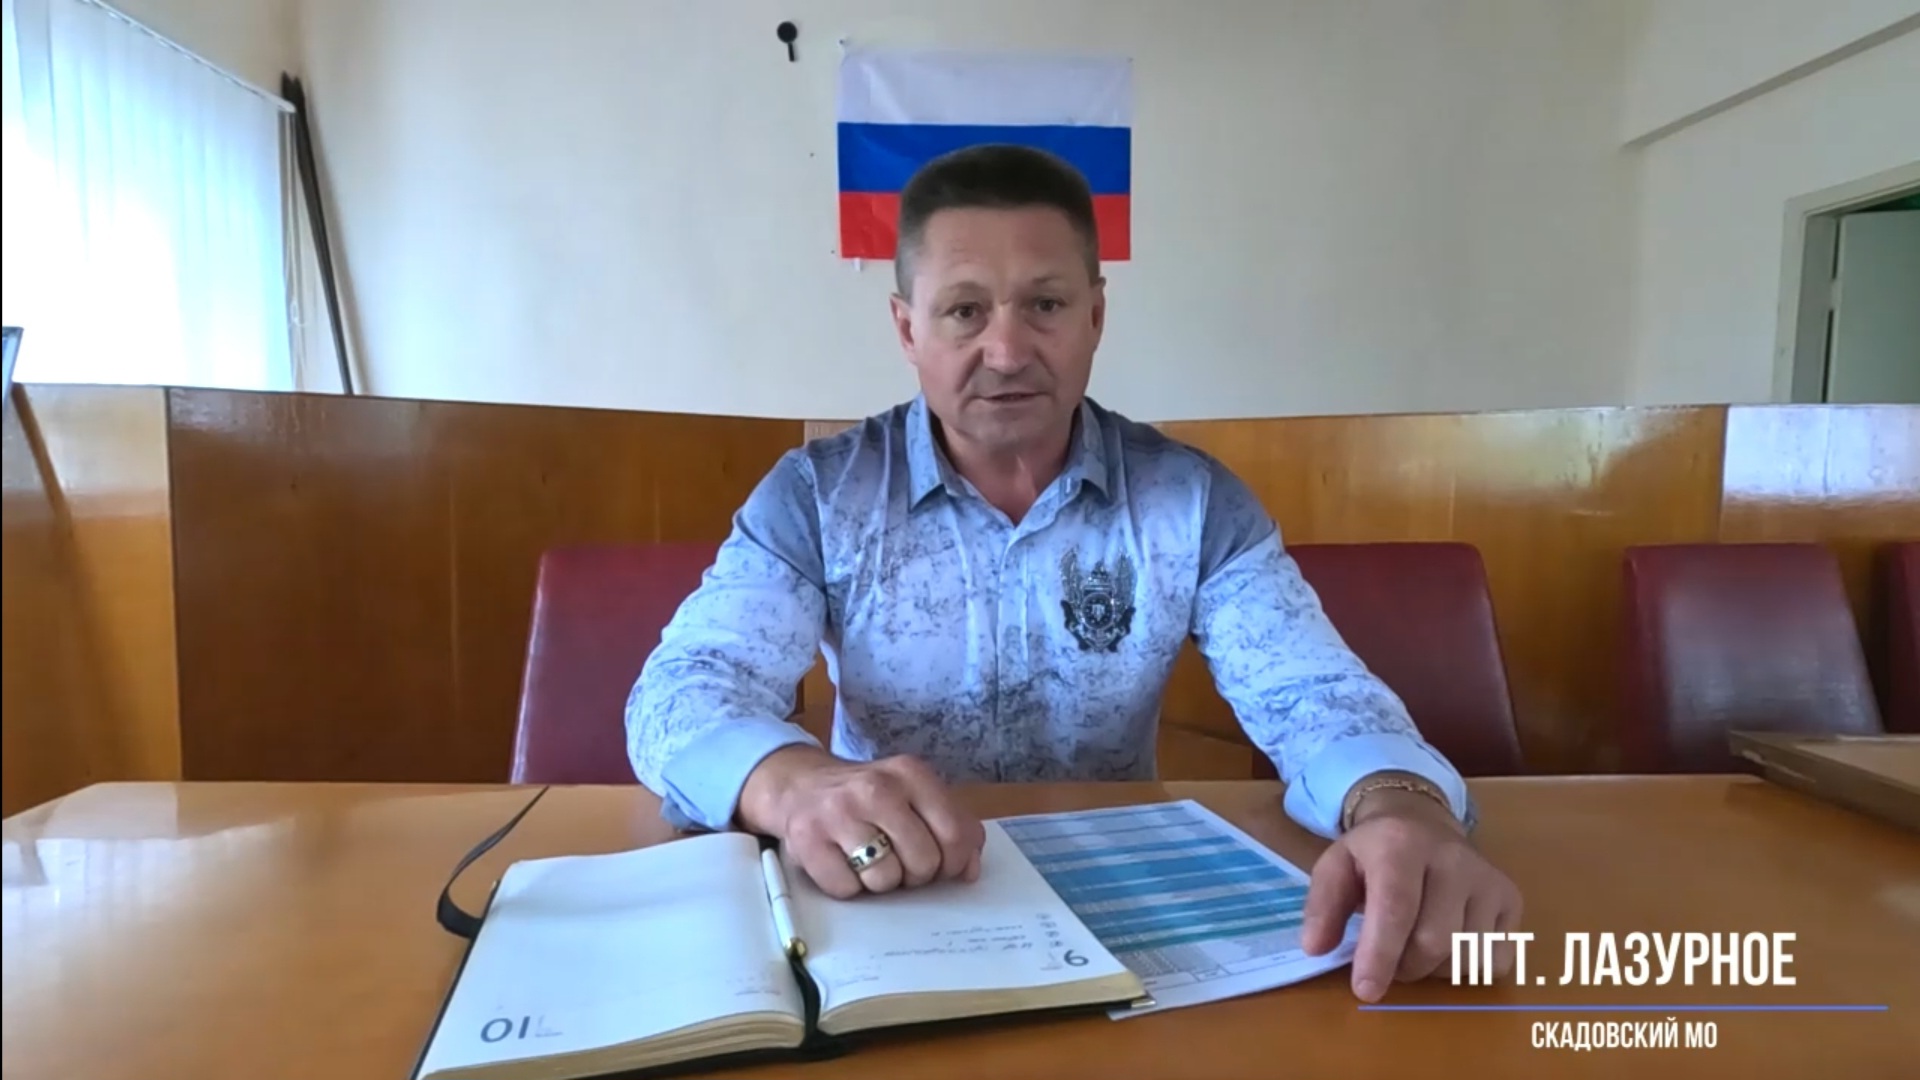 Олександр Дудка погрожує українцям, які відмовляються отримувати російські паспорти. Скриншот з відеозвернення нелегітимного голови Лазурненської селищної територіальної громади.